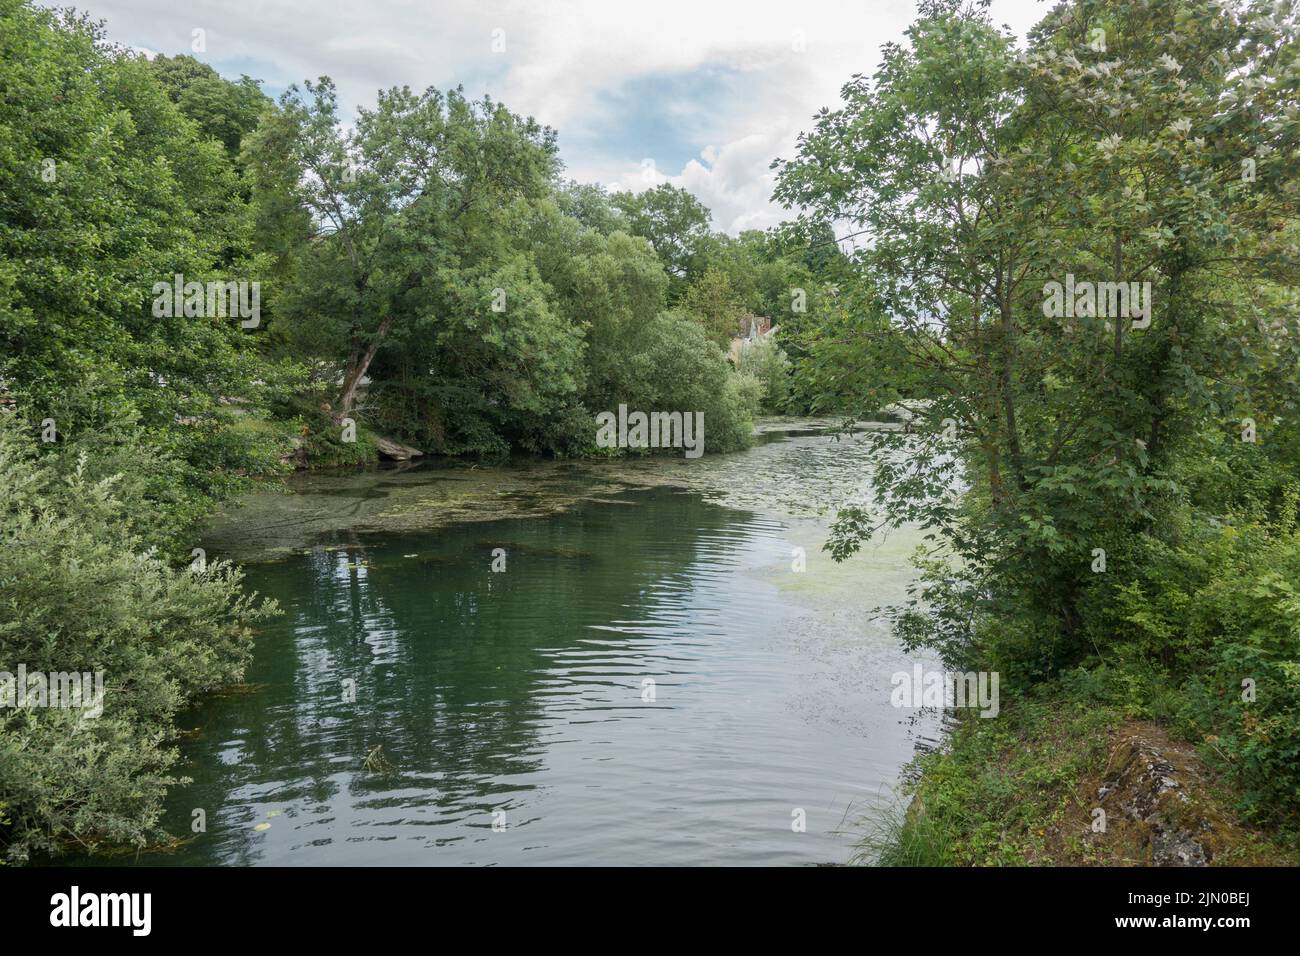 Samois sur seine along the riverbanks of the Seine, Ile de France, France Stock Photo